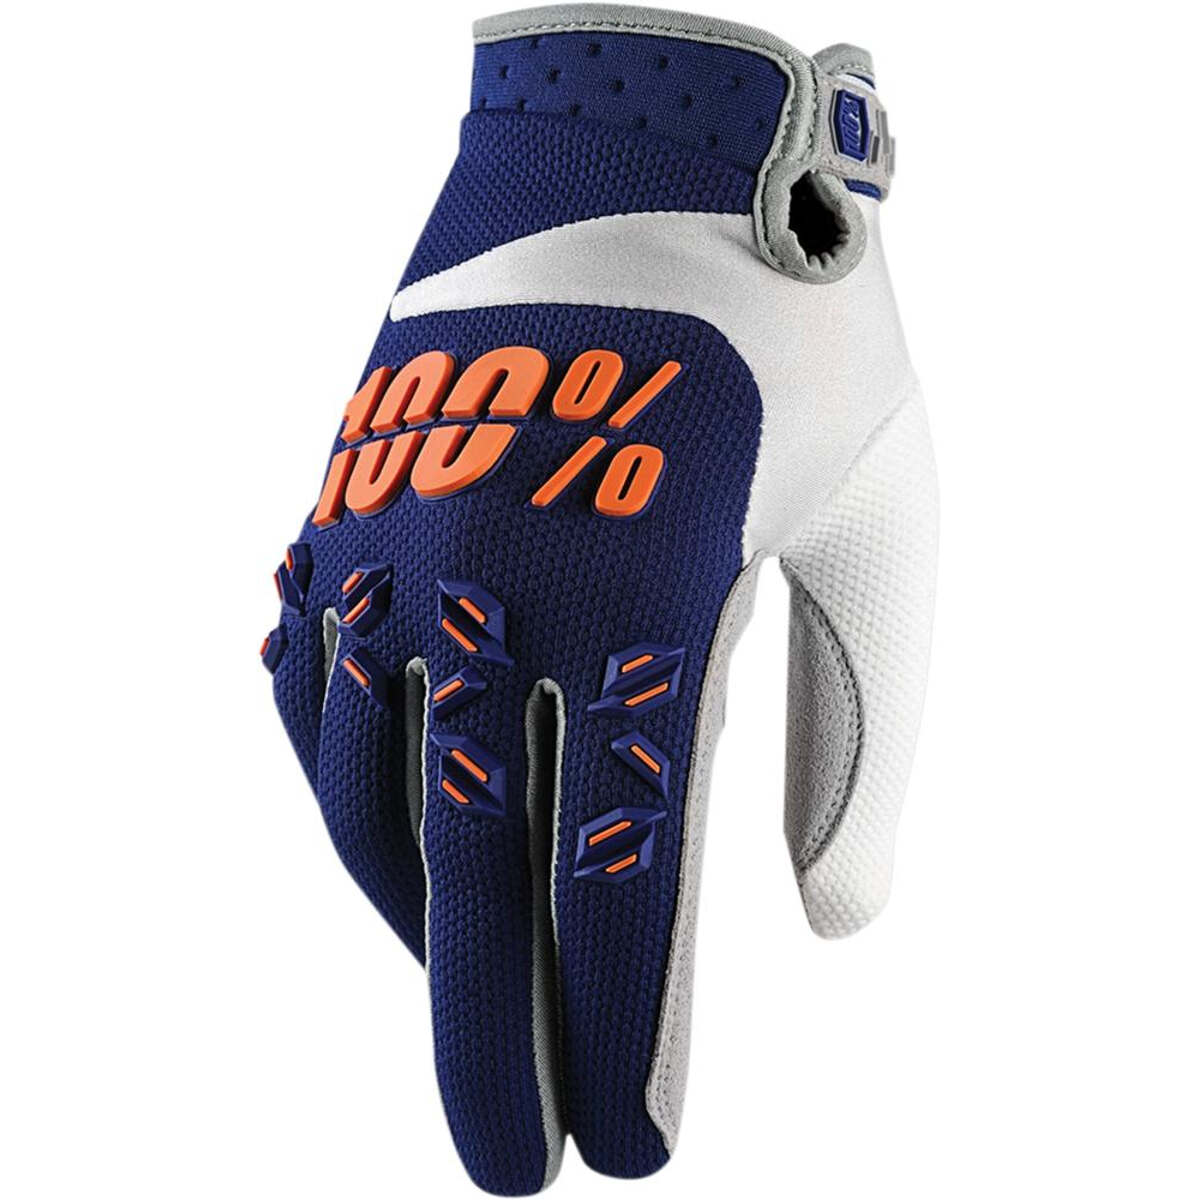 100% Kids Glove Airmatic Blue/Orange